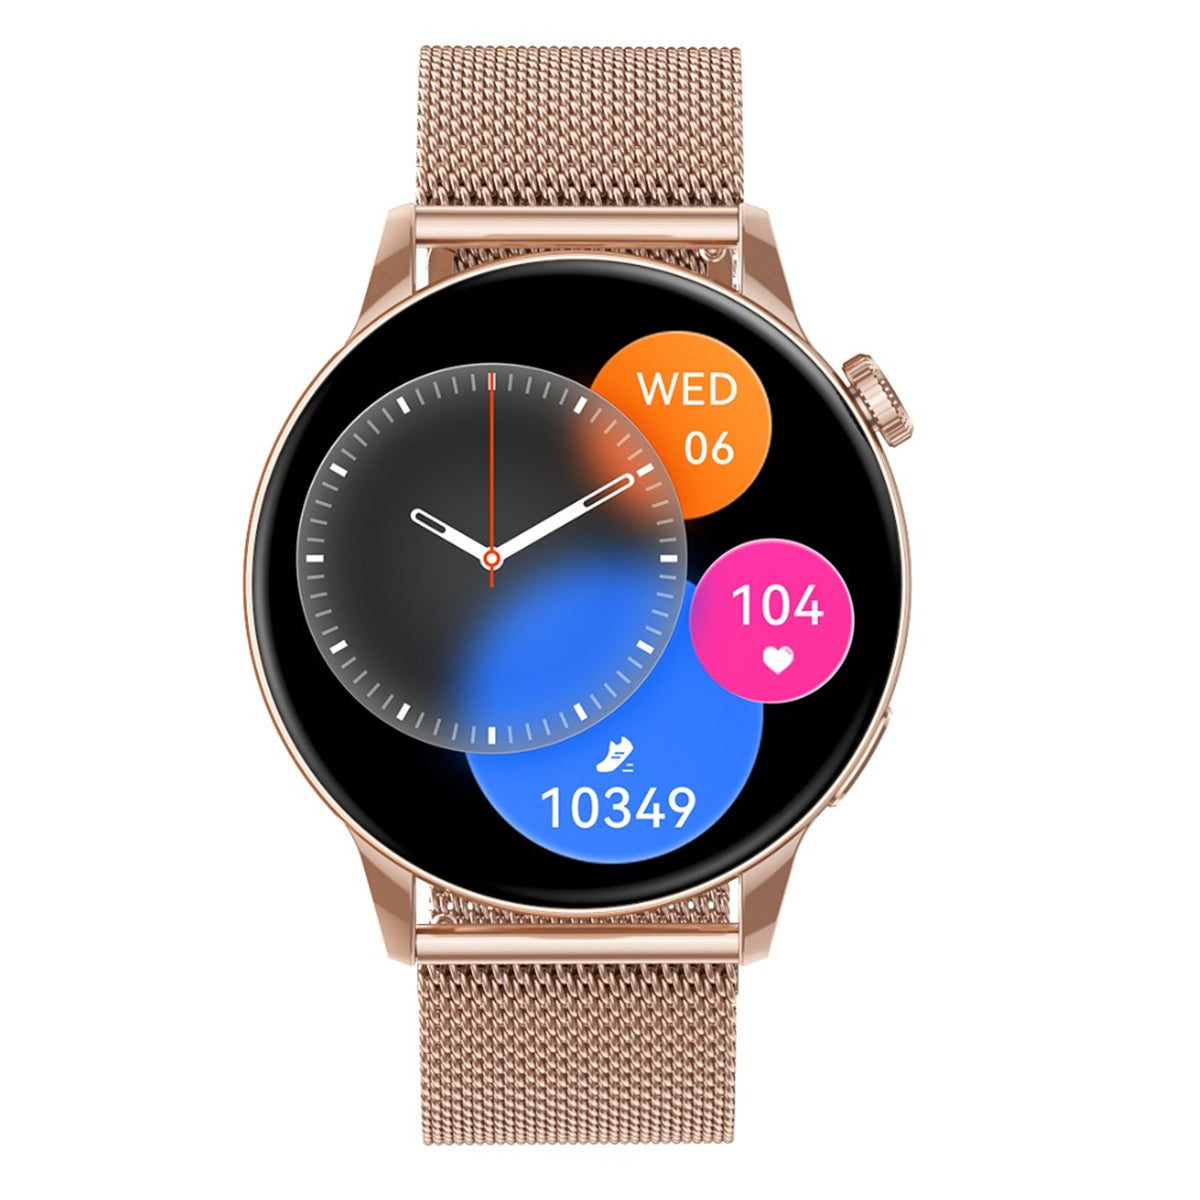 Smartwatch Reloj Inteligente Fralugio Hd1 Full Touch De Lujo